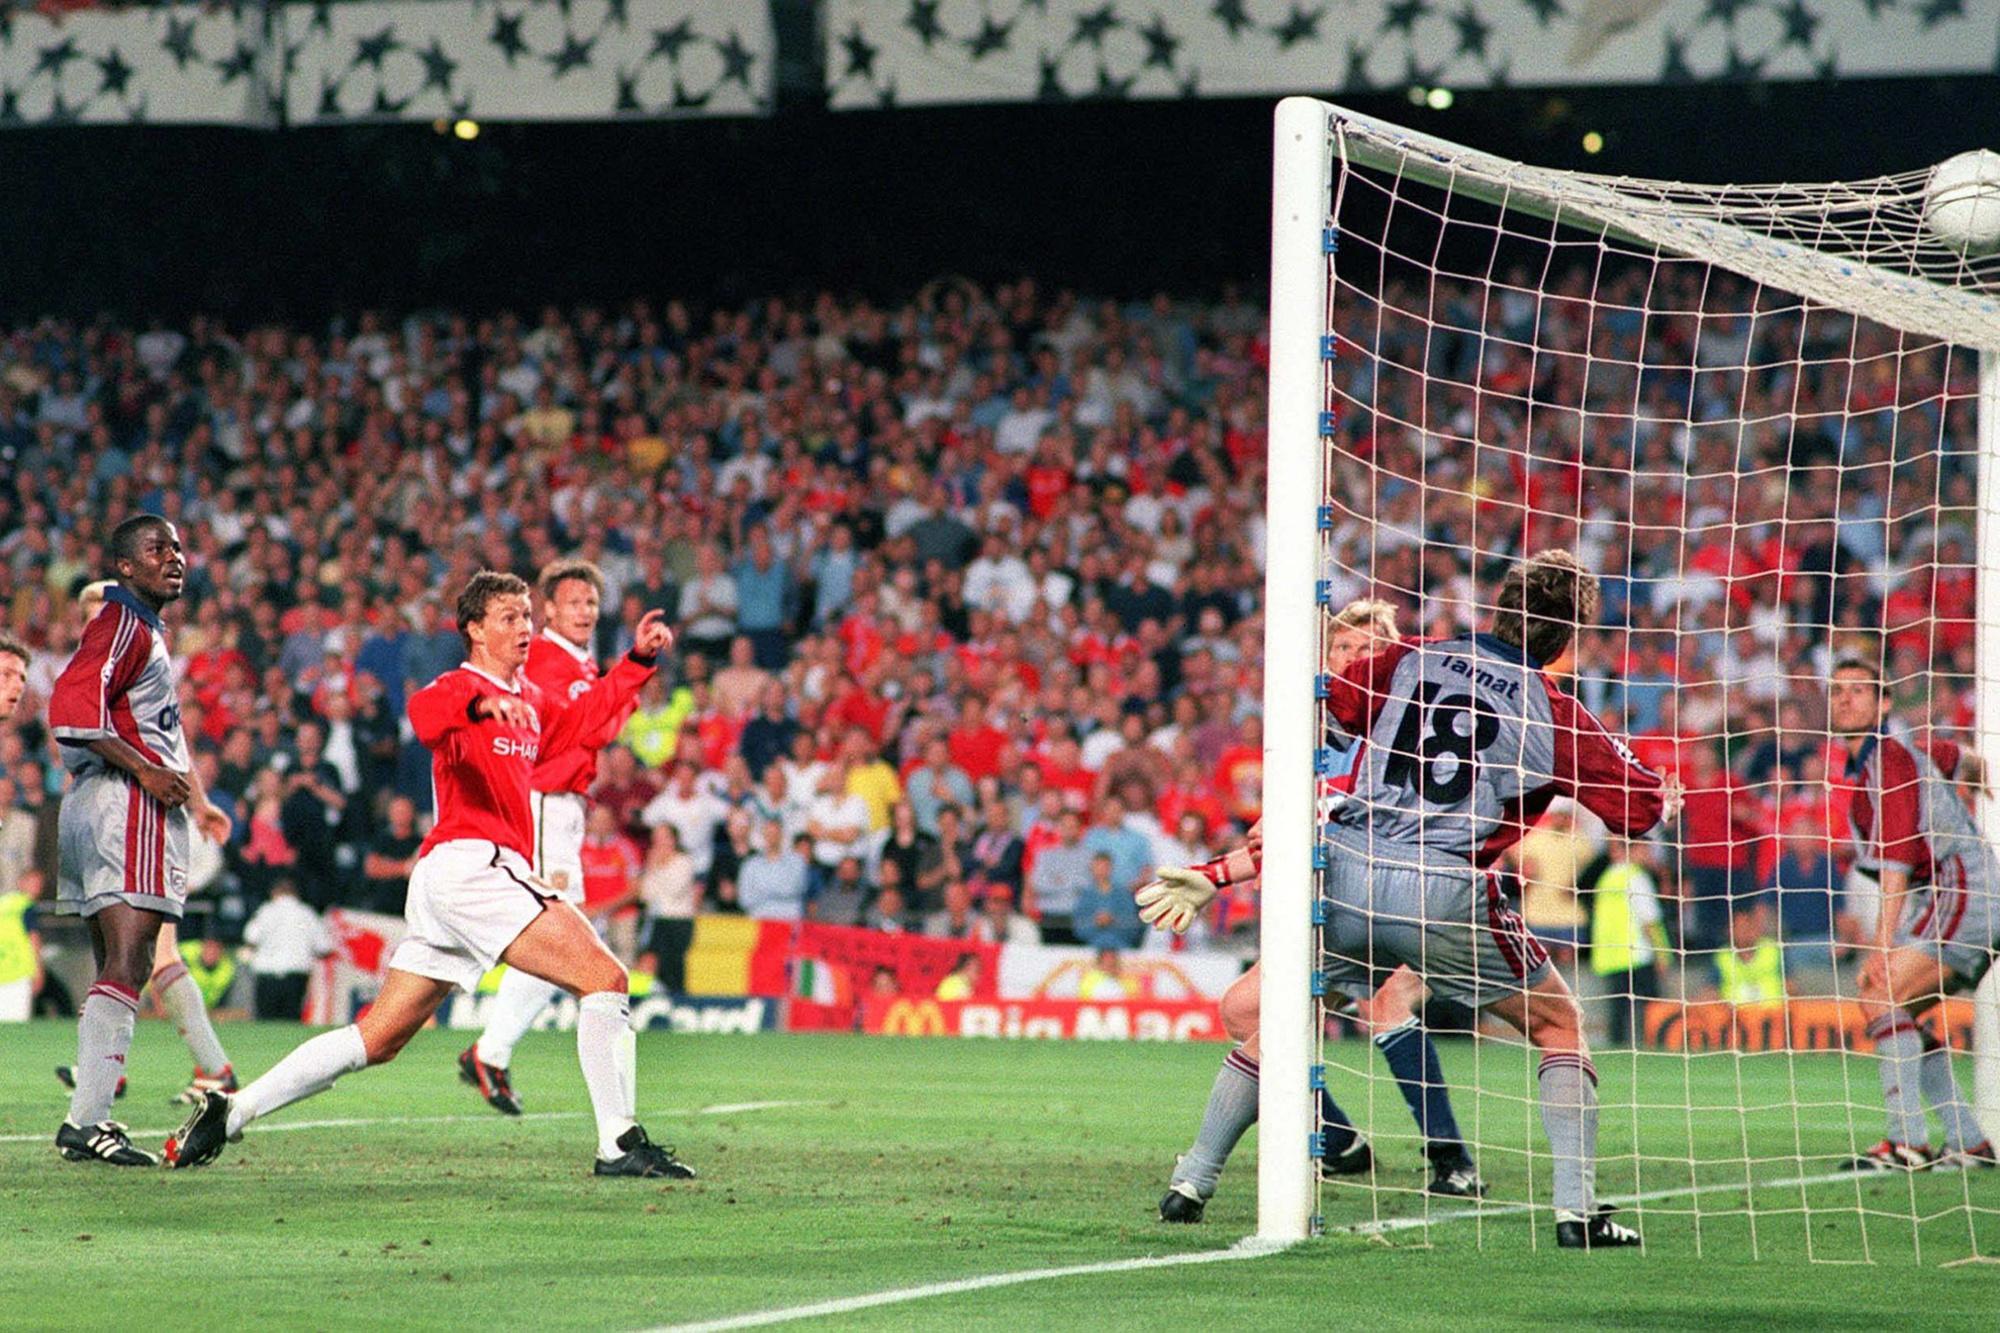 Ole Gunnar Solskjaer inscrit le but de la victoire face au Bayern en finale de la Champions League 1999.